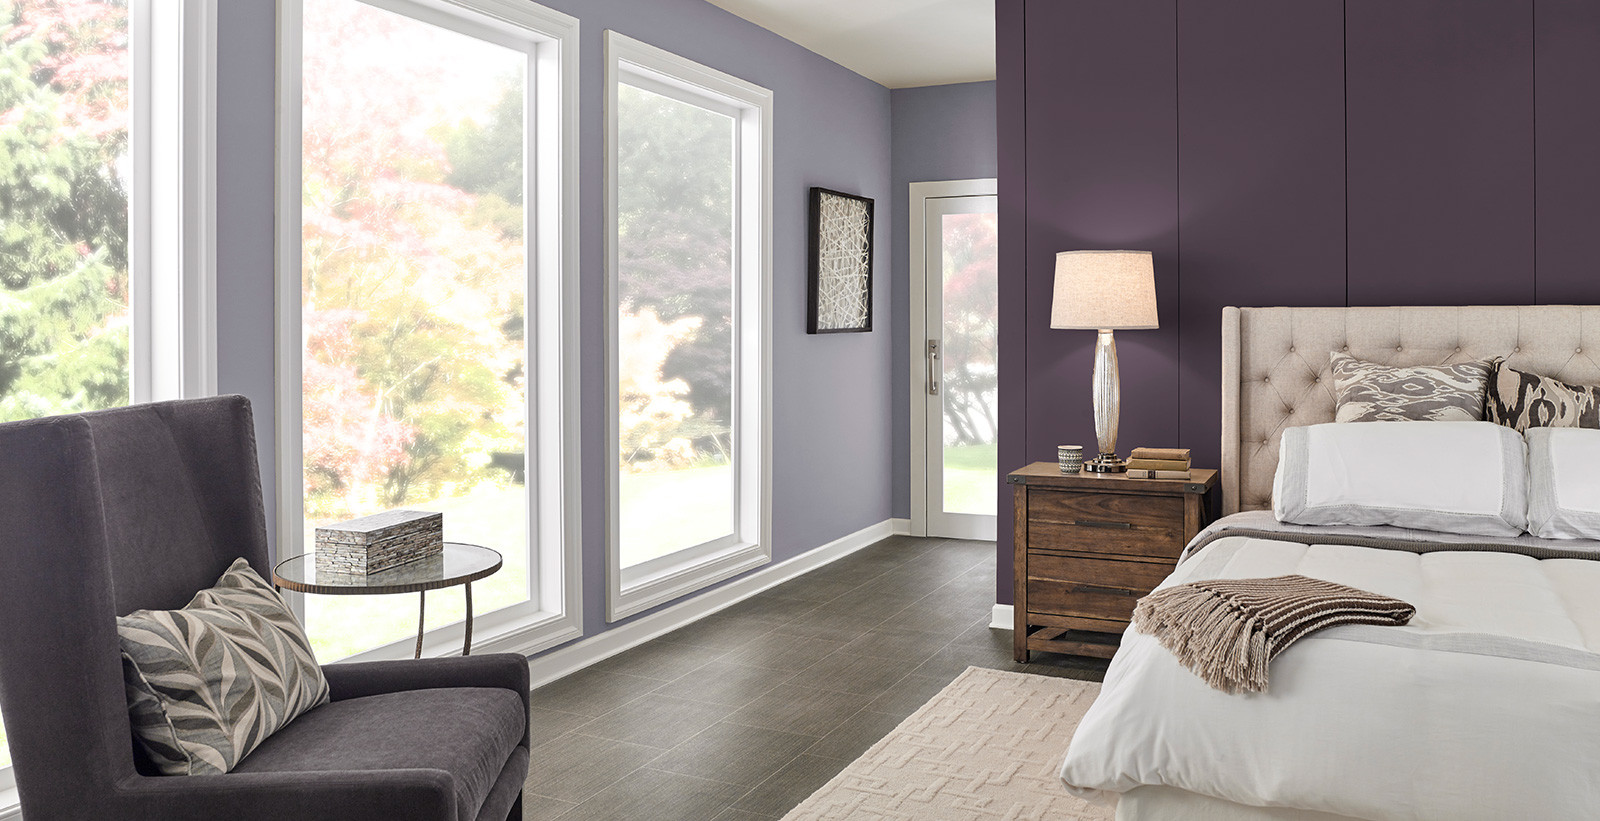 Behr Bedroom Paint Colors
 Calming Bedroom Colors Relaxing Bedroom Colors Paint